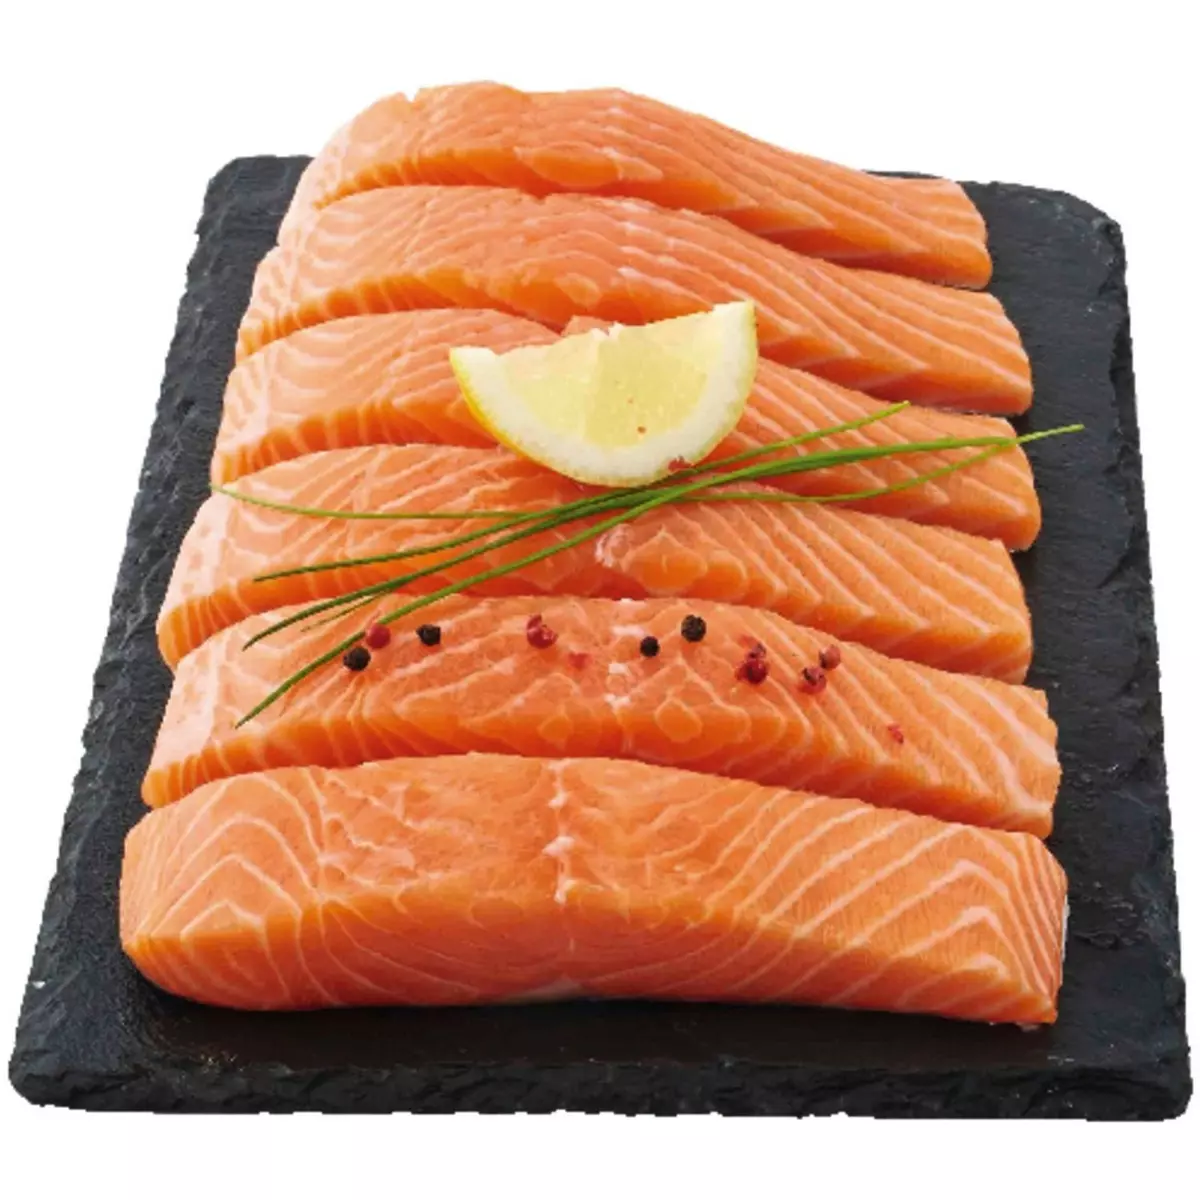 Date de péremption saumon fumé : peut-on manger du saumon fumé périmé ?